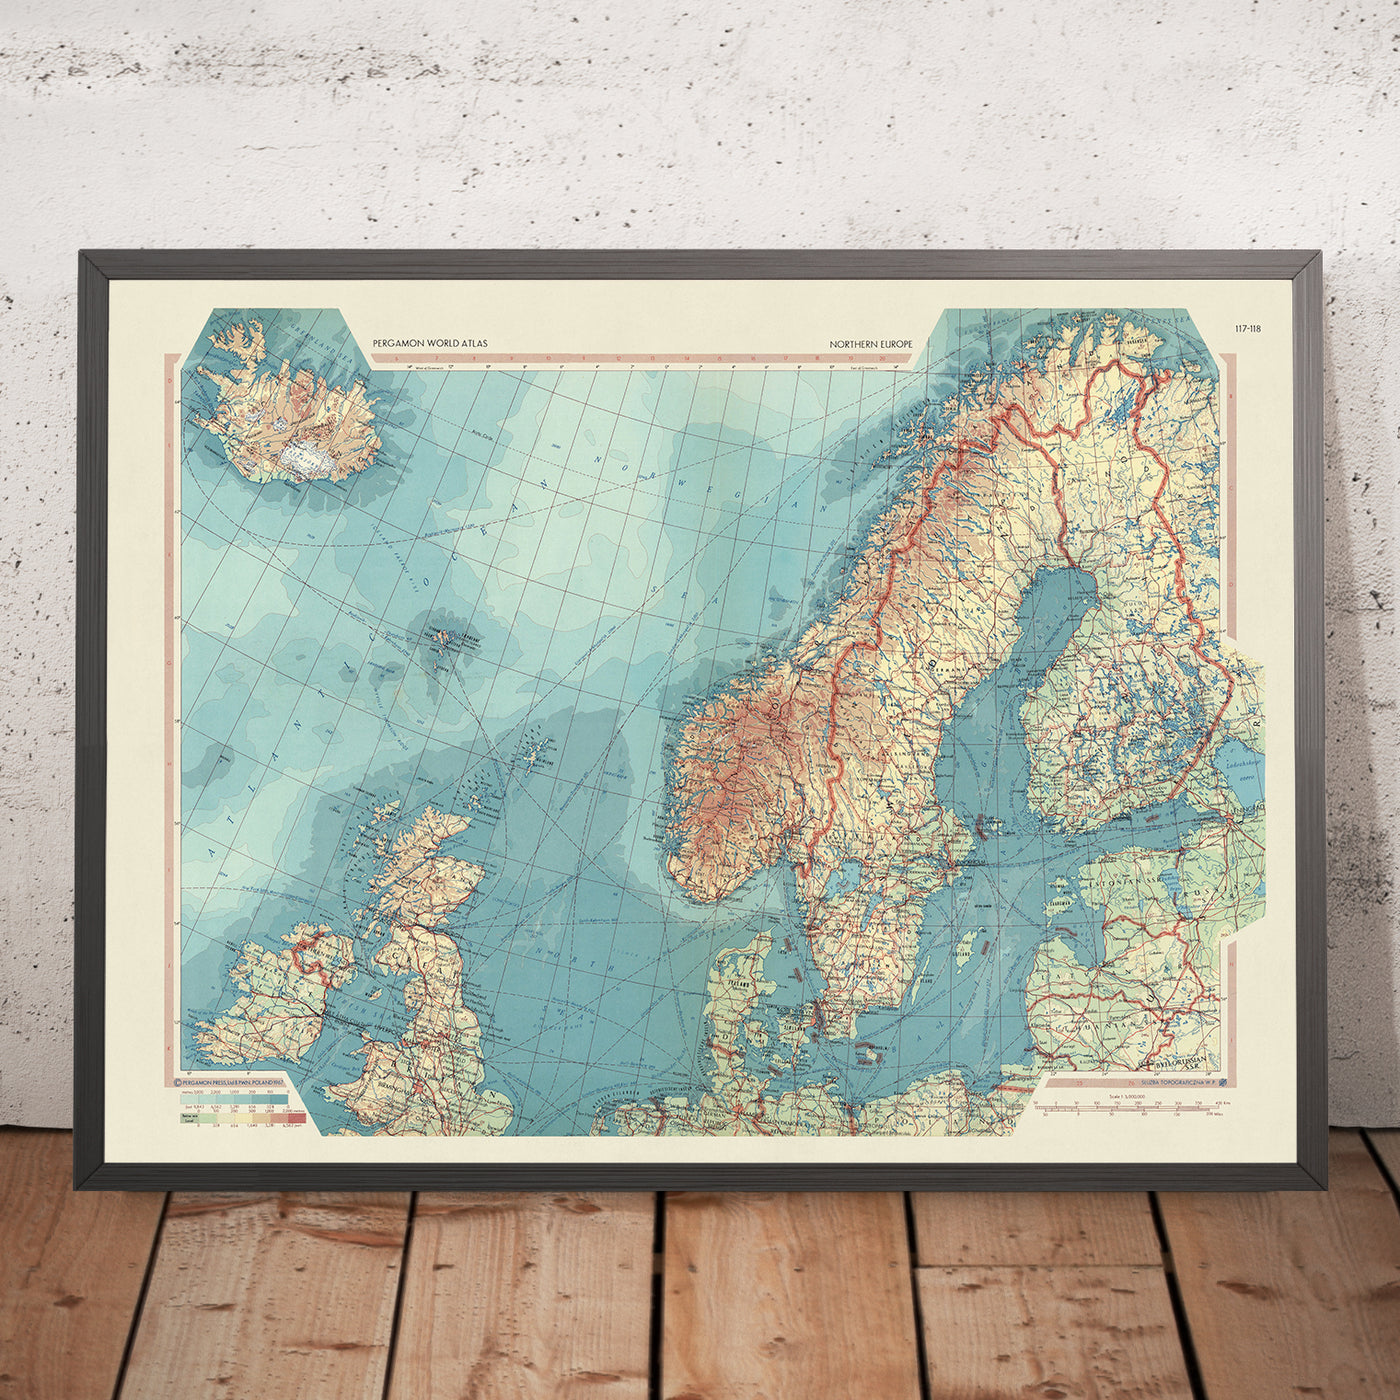 Carte du vieux monde de l'Europe du Nord par le service topographique de l'armée polonaise, 1967 : carte politique et physique détaillée de la Scandinavie, du Royaume-Uni et de l'Islande